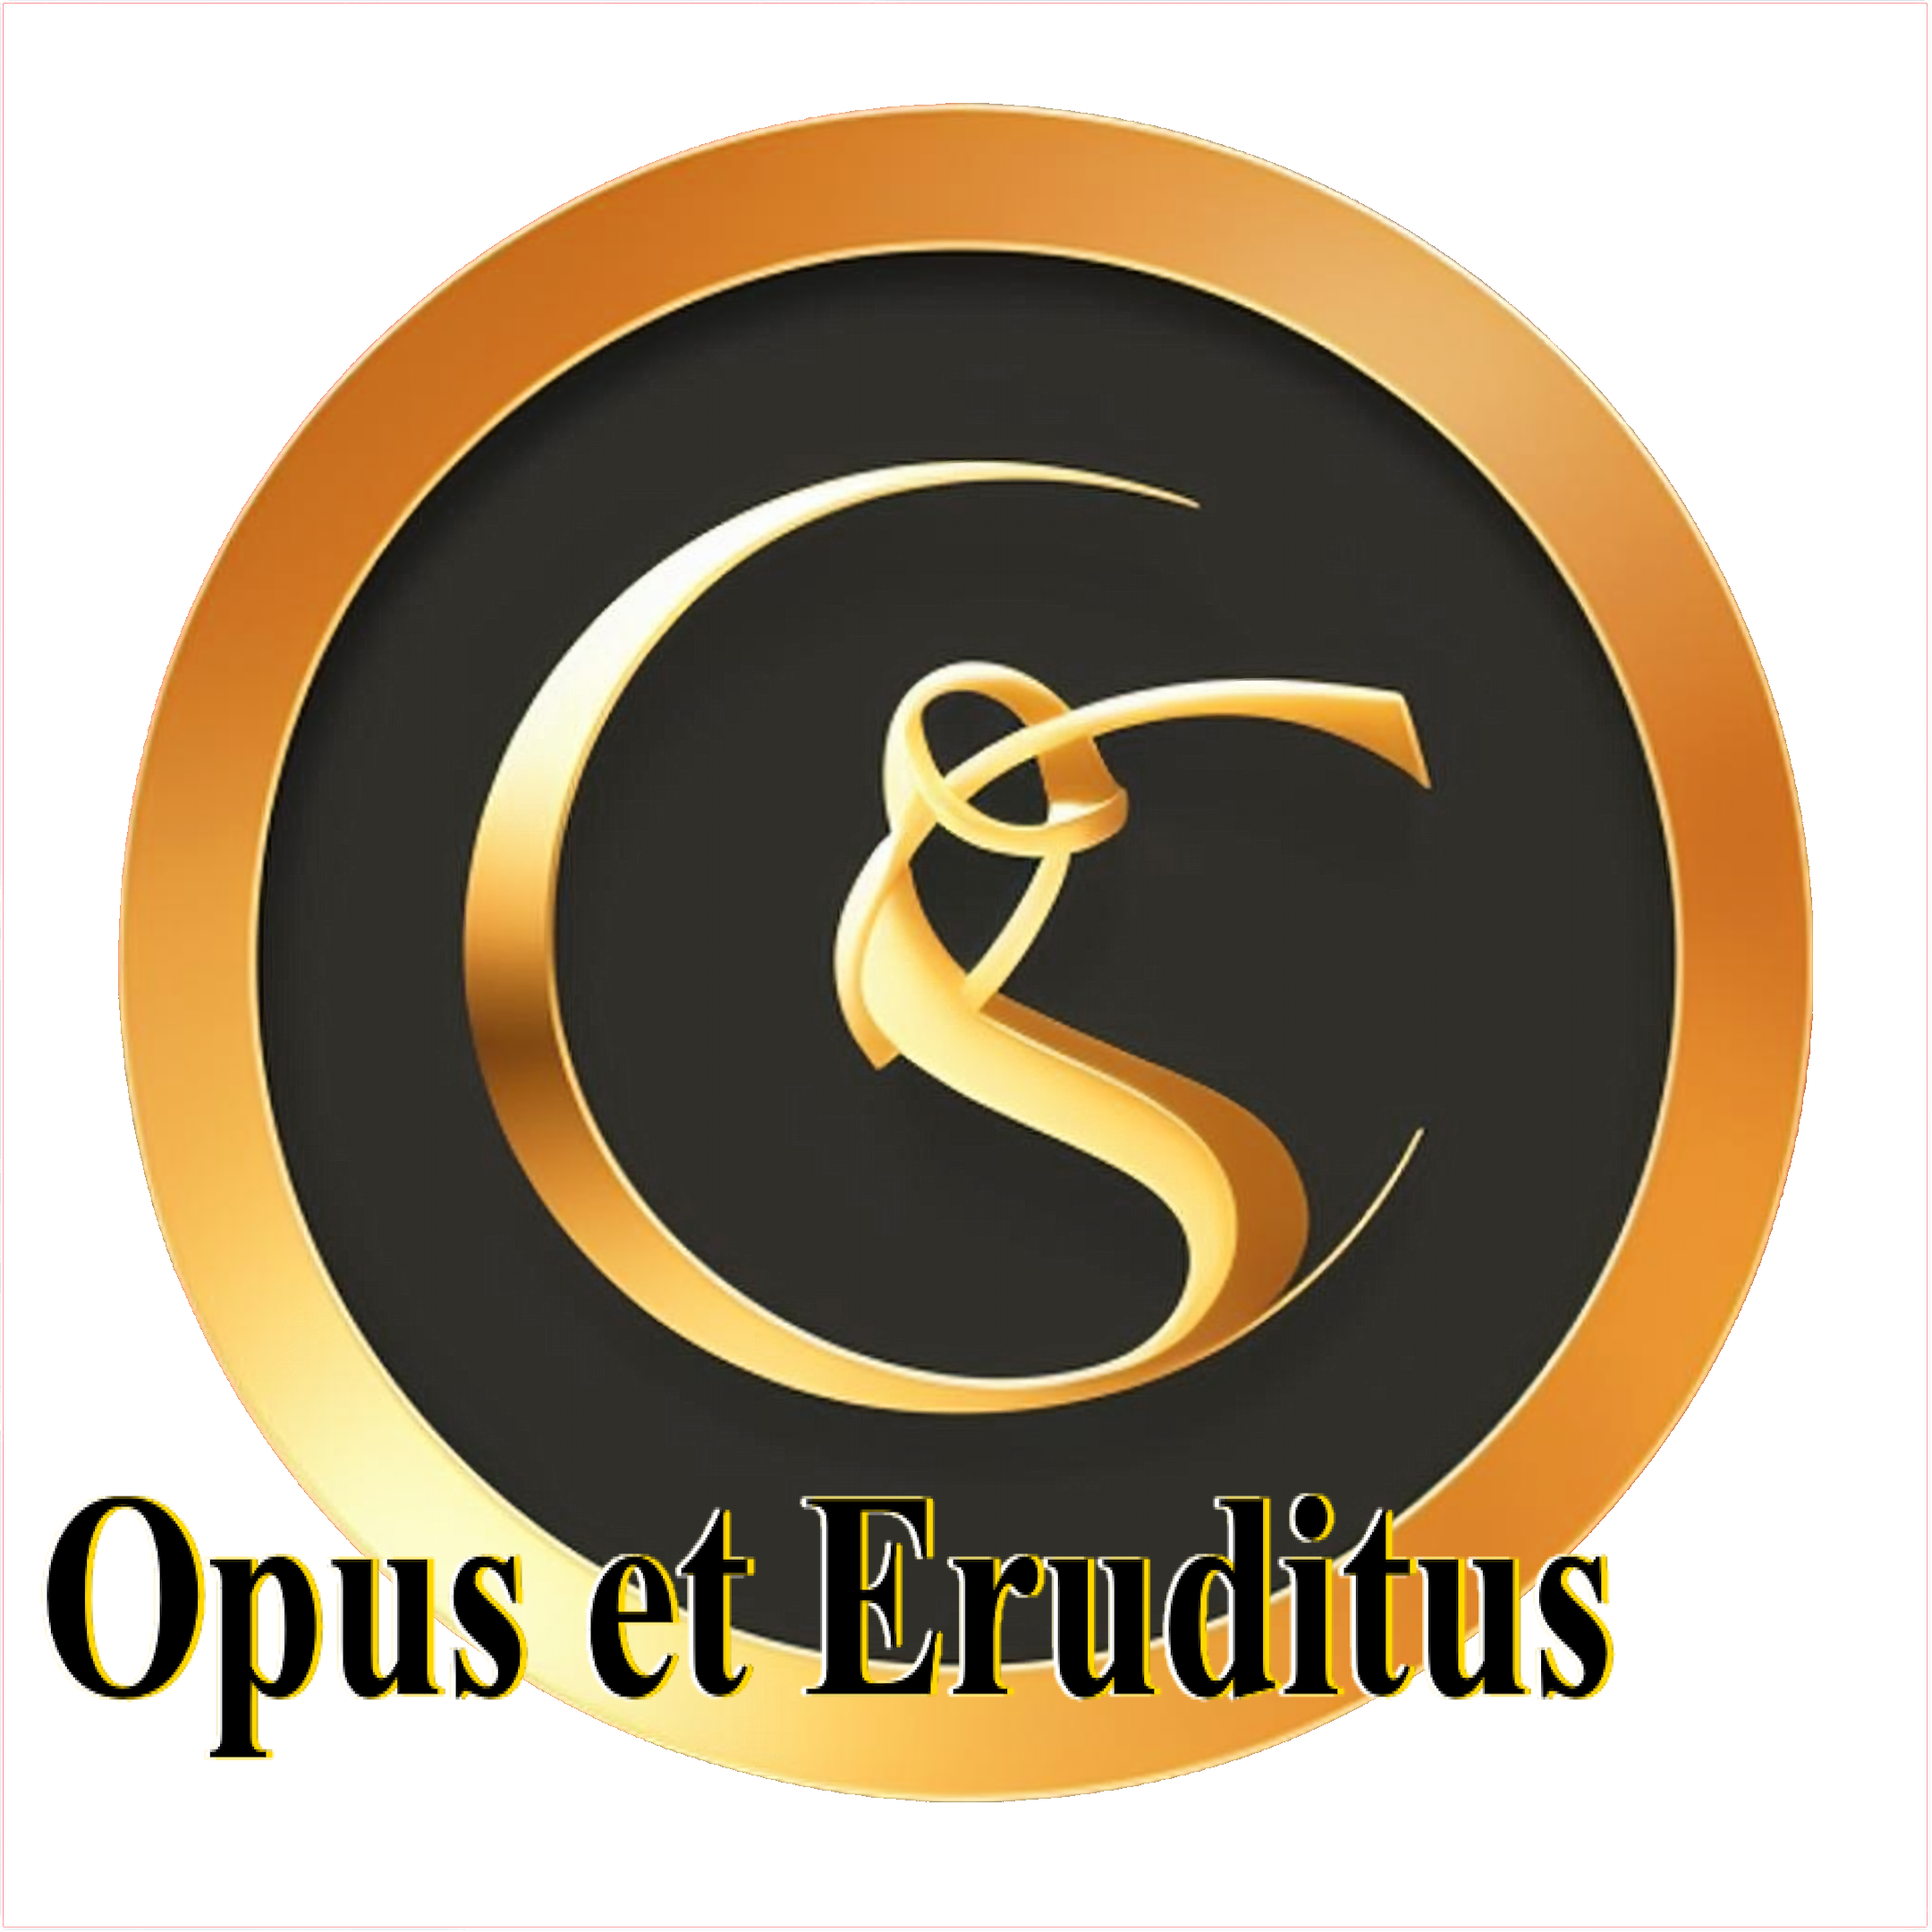 Opus et Eruditus